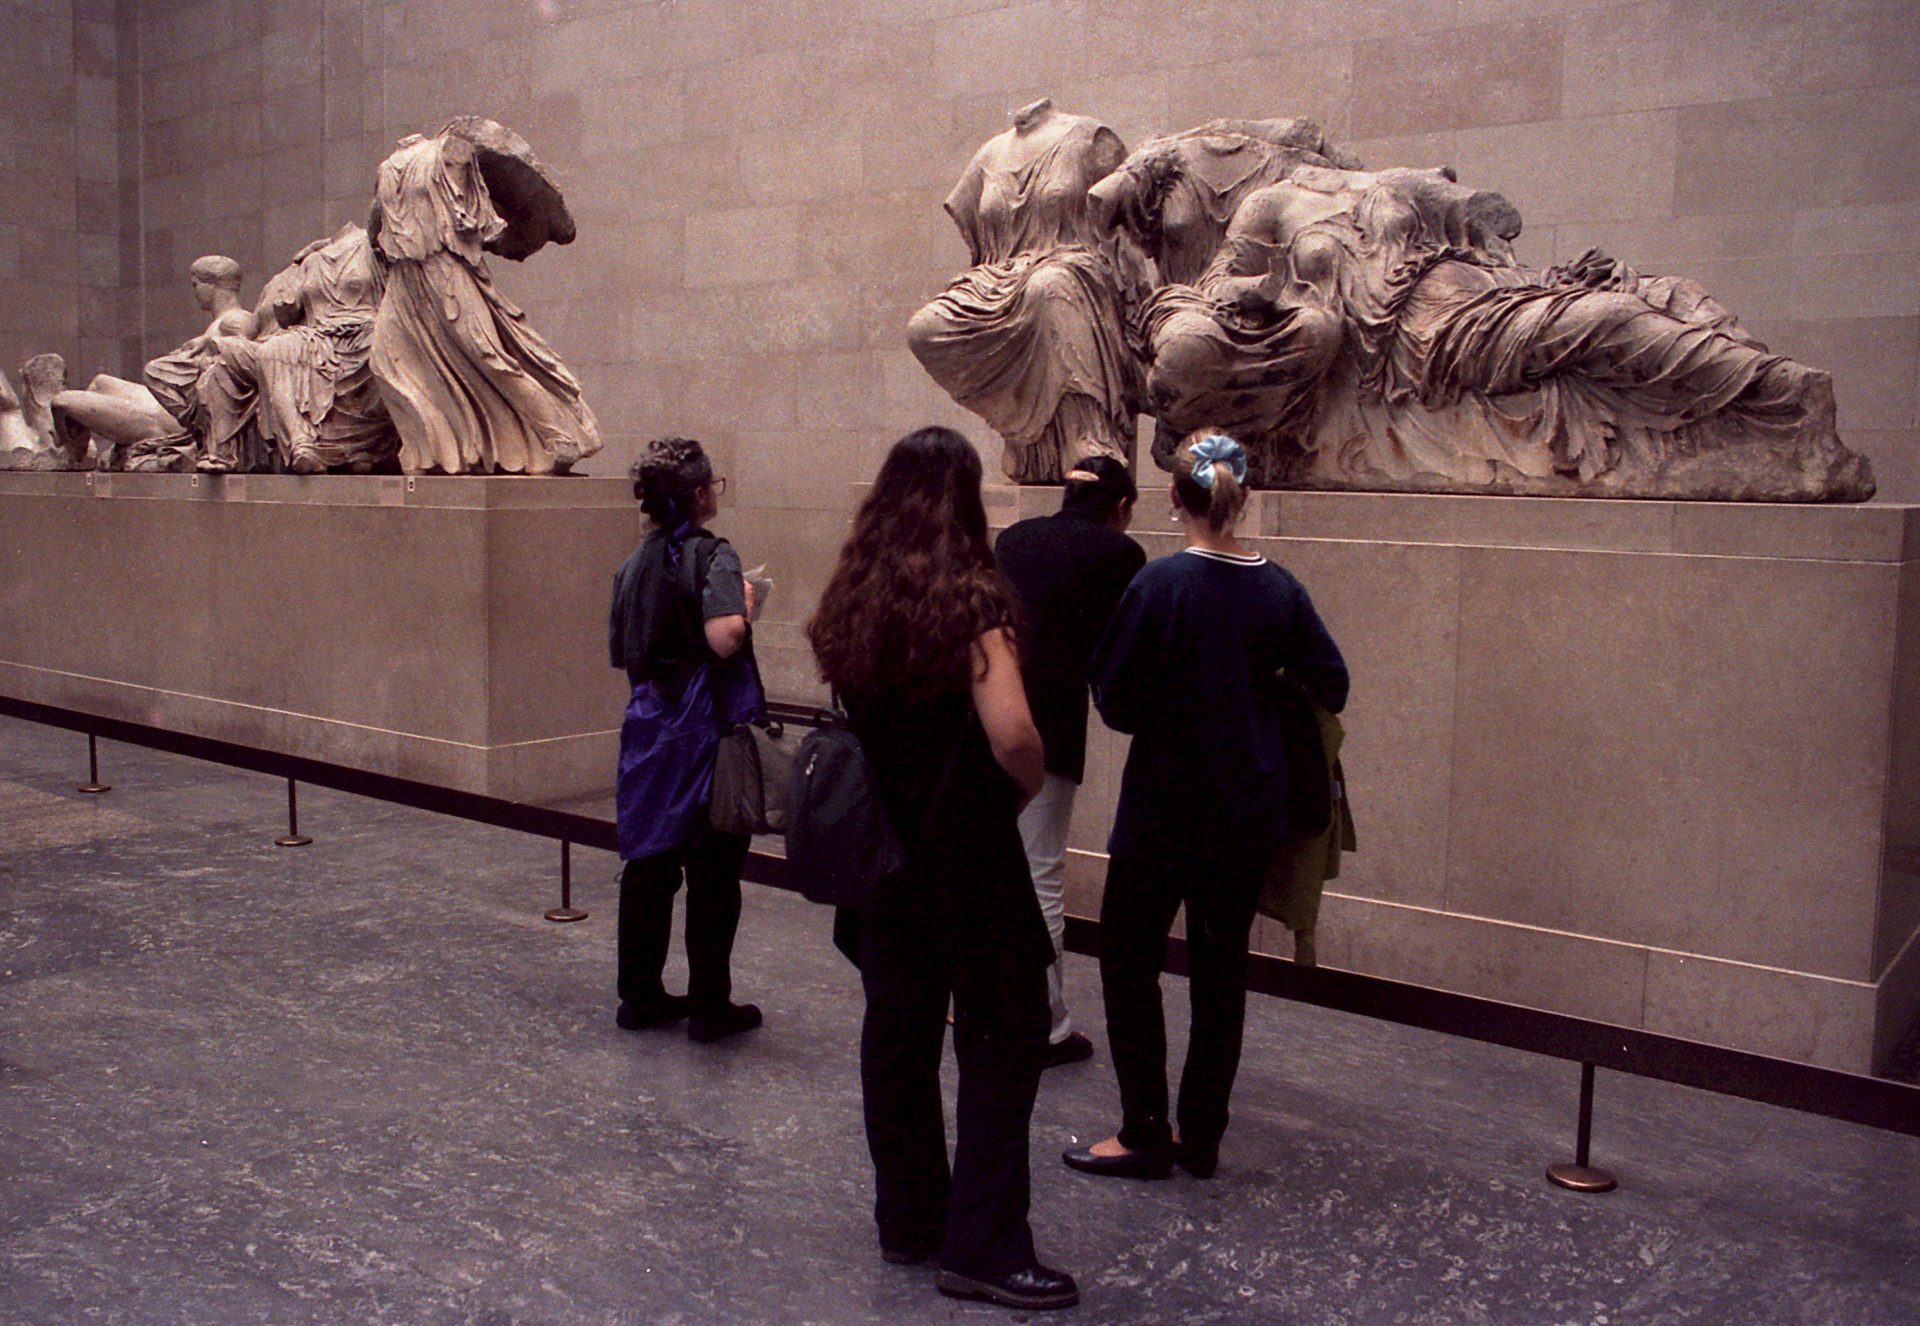 Grecia dice que un acuerdo para el regreso de los Mármoles del Partenón no es imposible, ya que los parte de los frontones del monumento se encuentra exhibido en el Museo Británico de Londres.